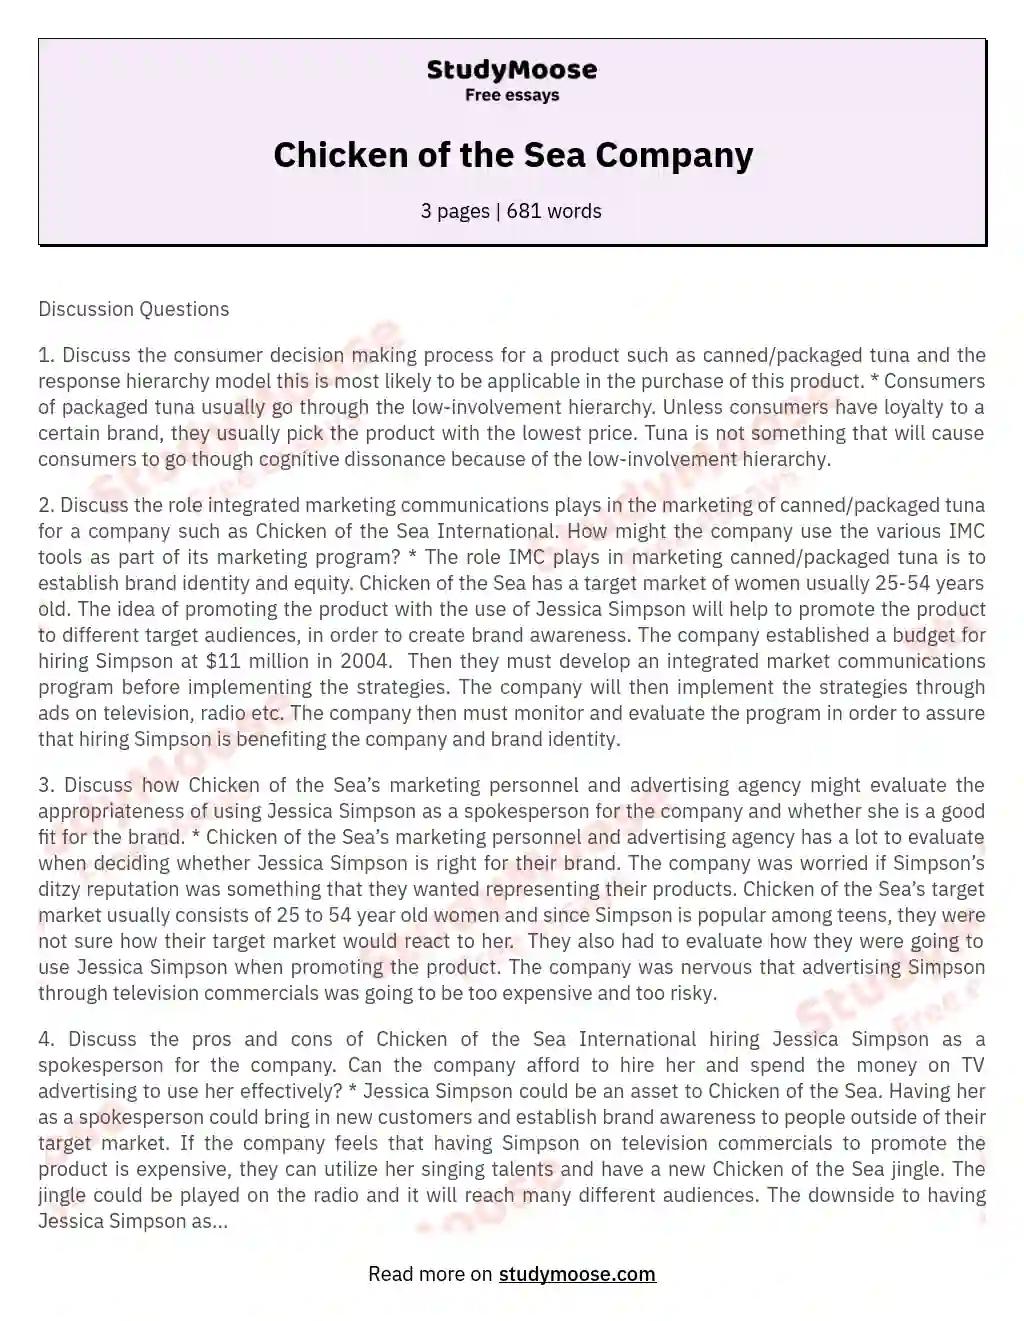 Chicken of the Sea Company essay